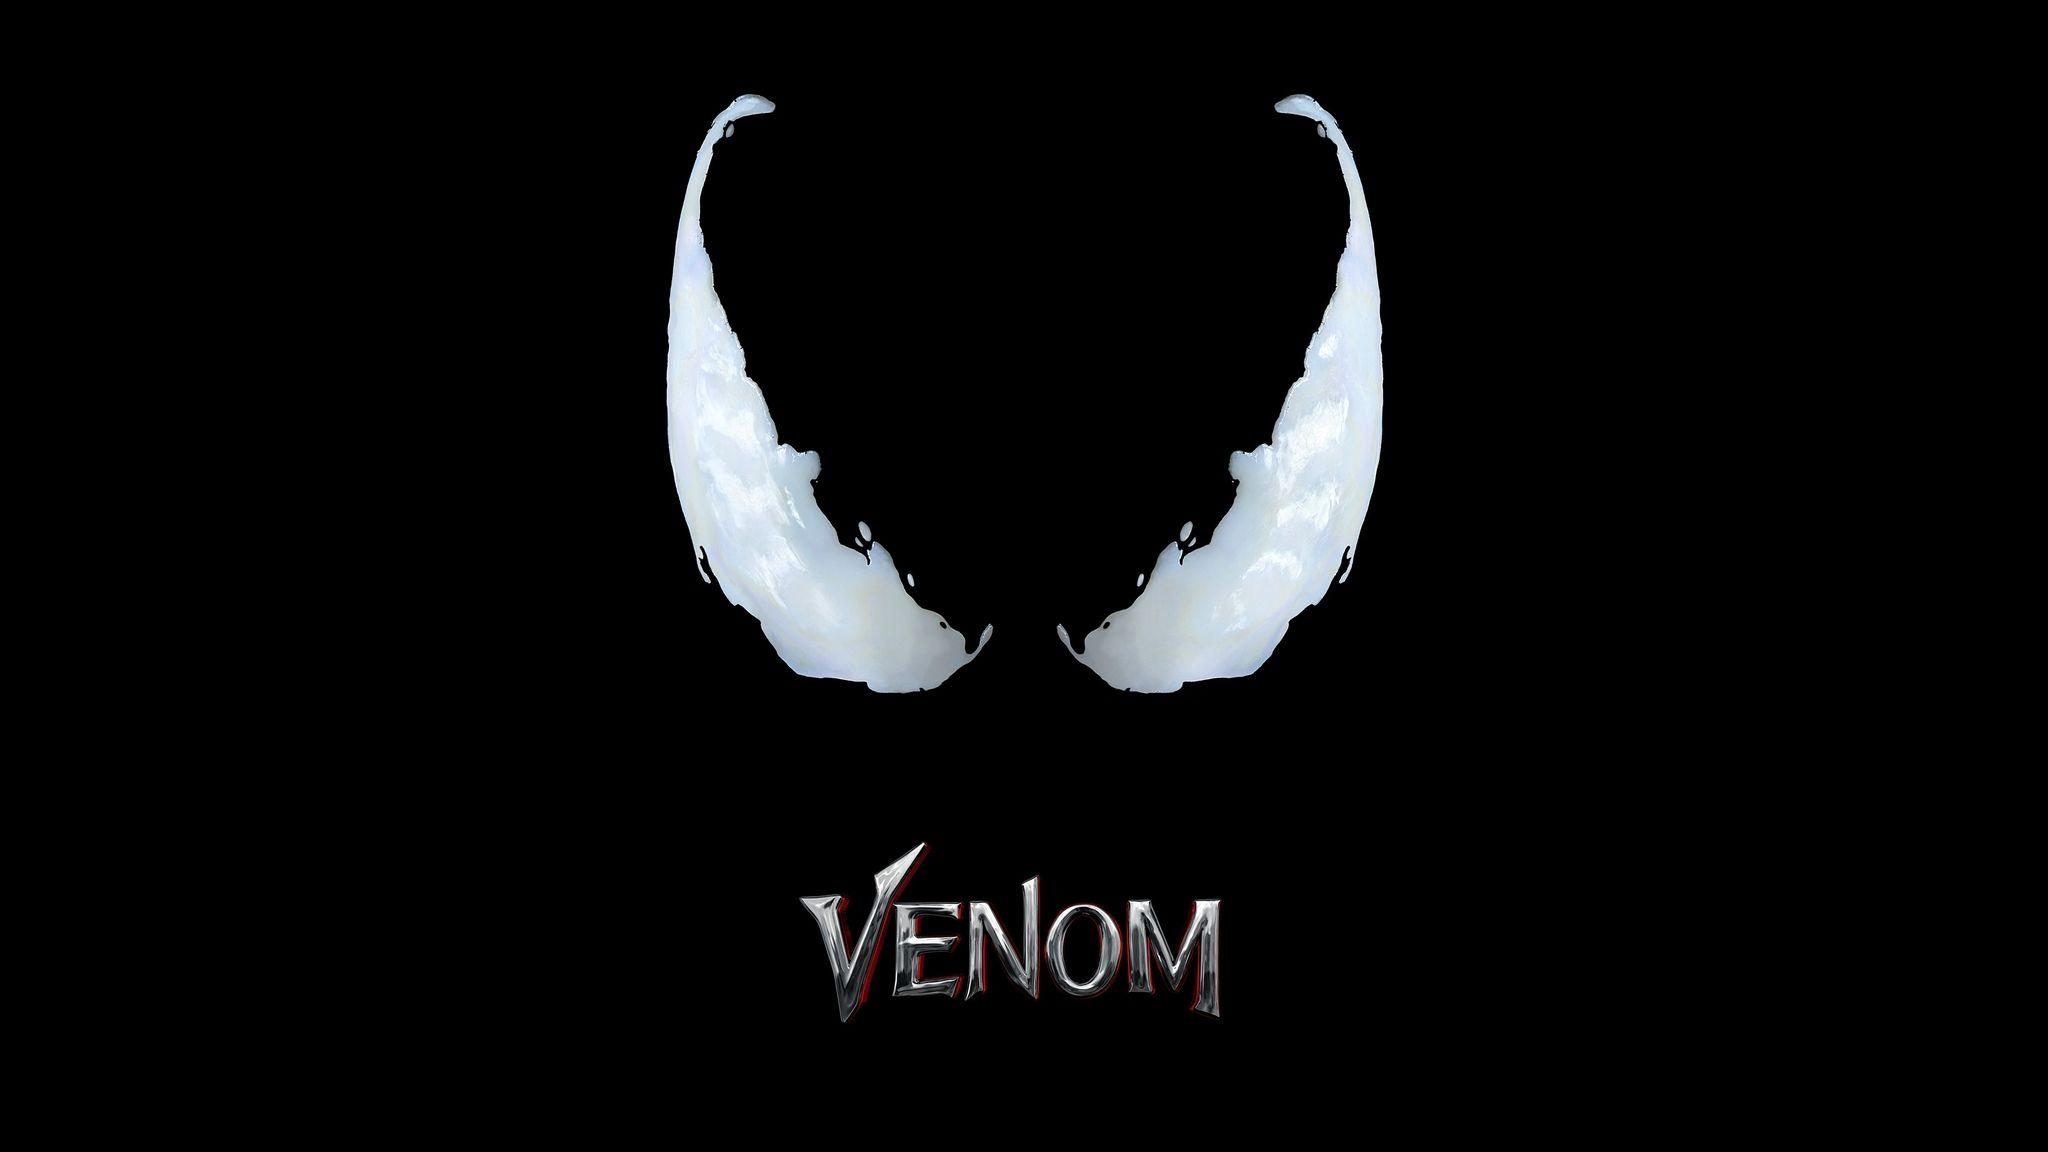 Venom Movie Logo 4k 2048x1152 Resolution HD 4k Wallpaper